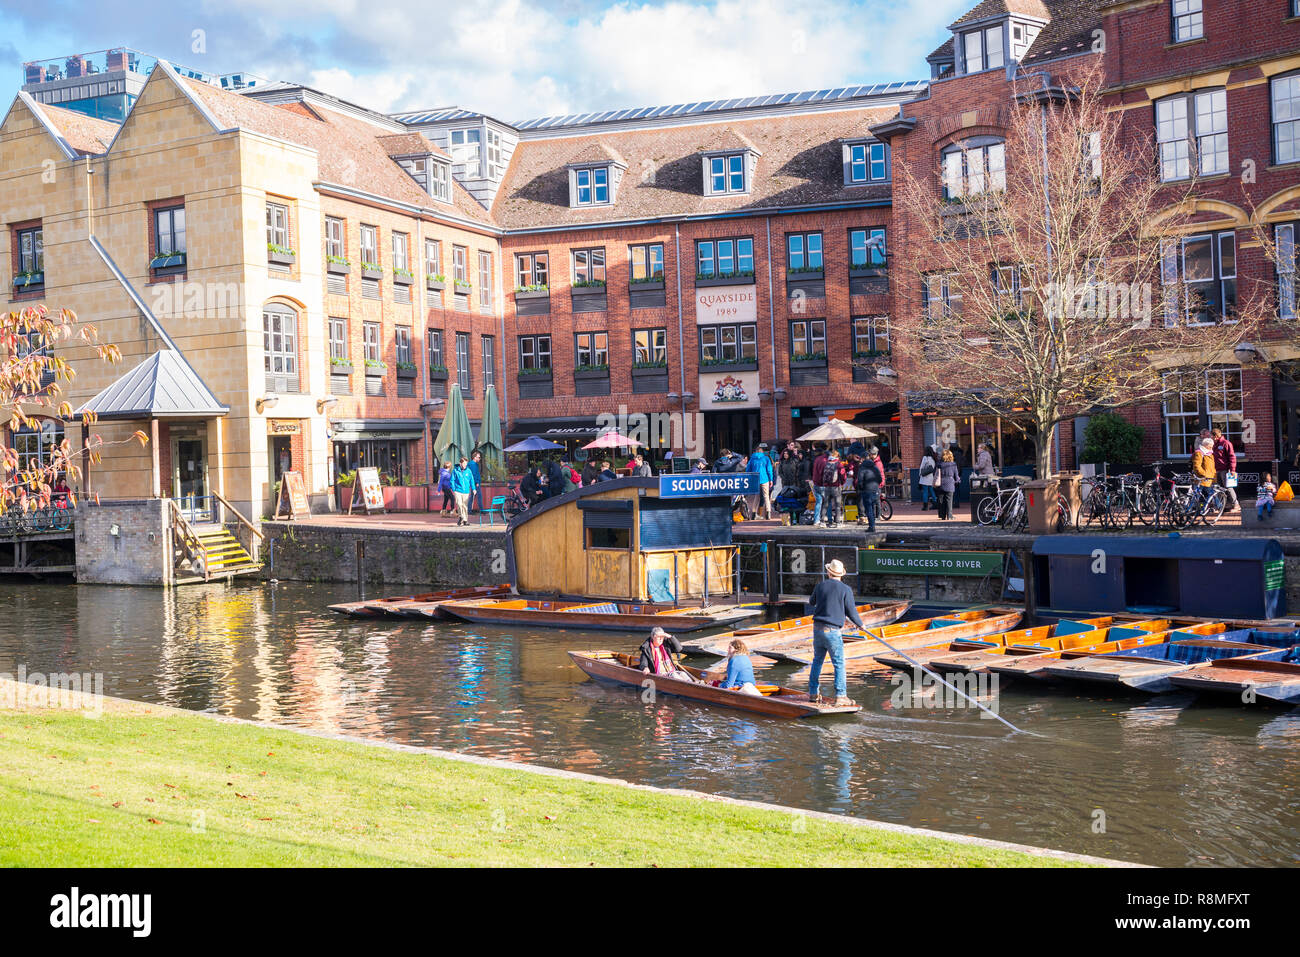 Cambridge, UK - Octobre 2018. Scudamore & Quais barques Station avec les touristes en barque sur la rivière Cam, vue du jardin avec Magdalene College. Banque D'Images